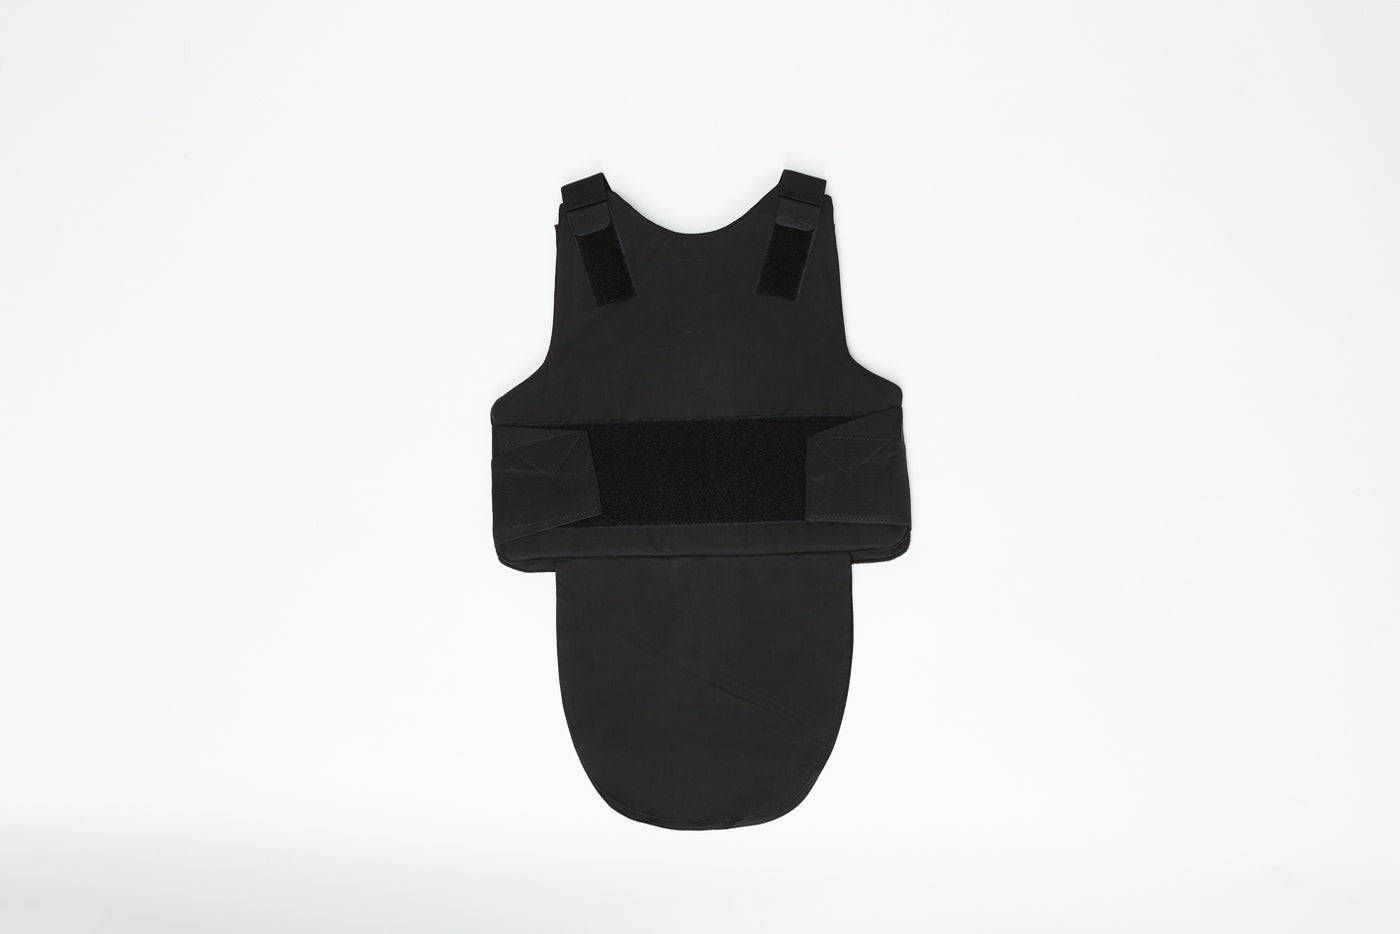 Bullet Proof Concealable Men's Vest